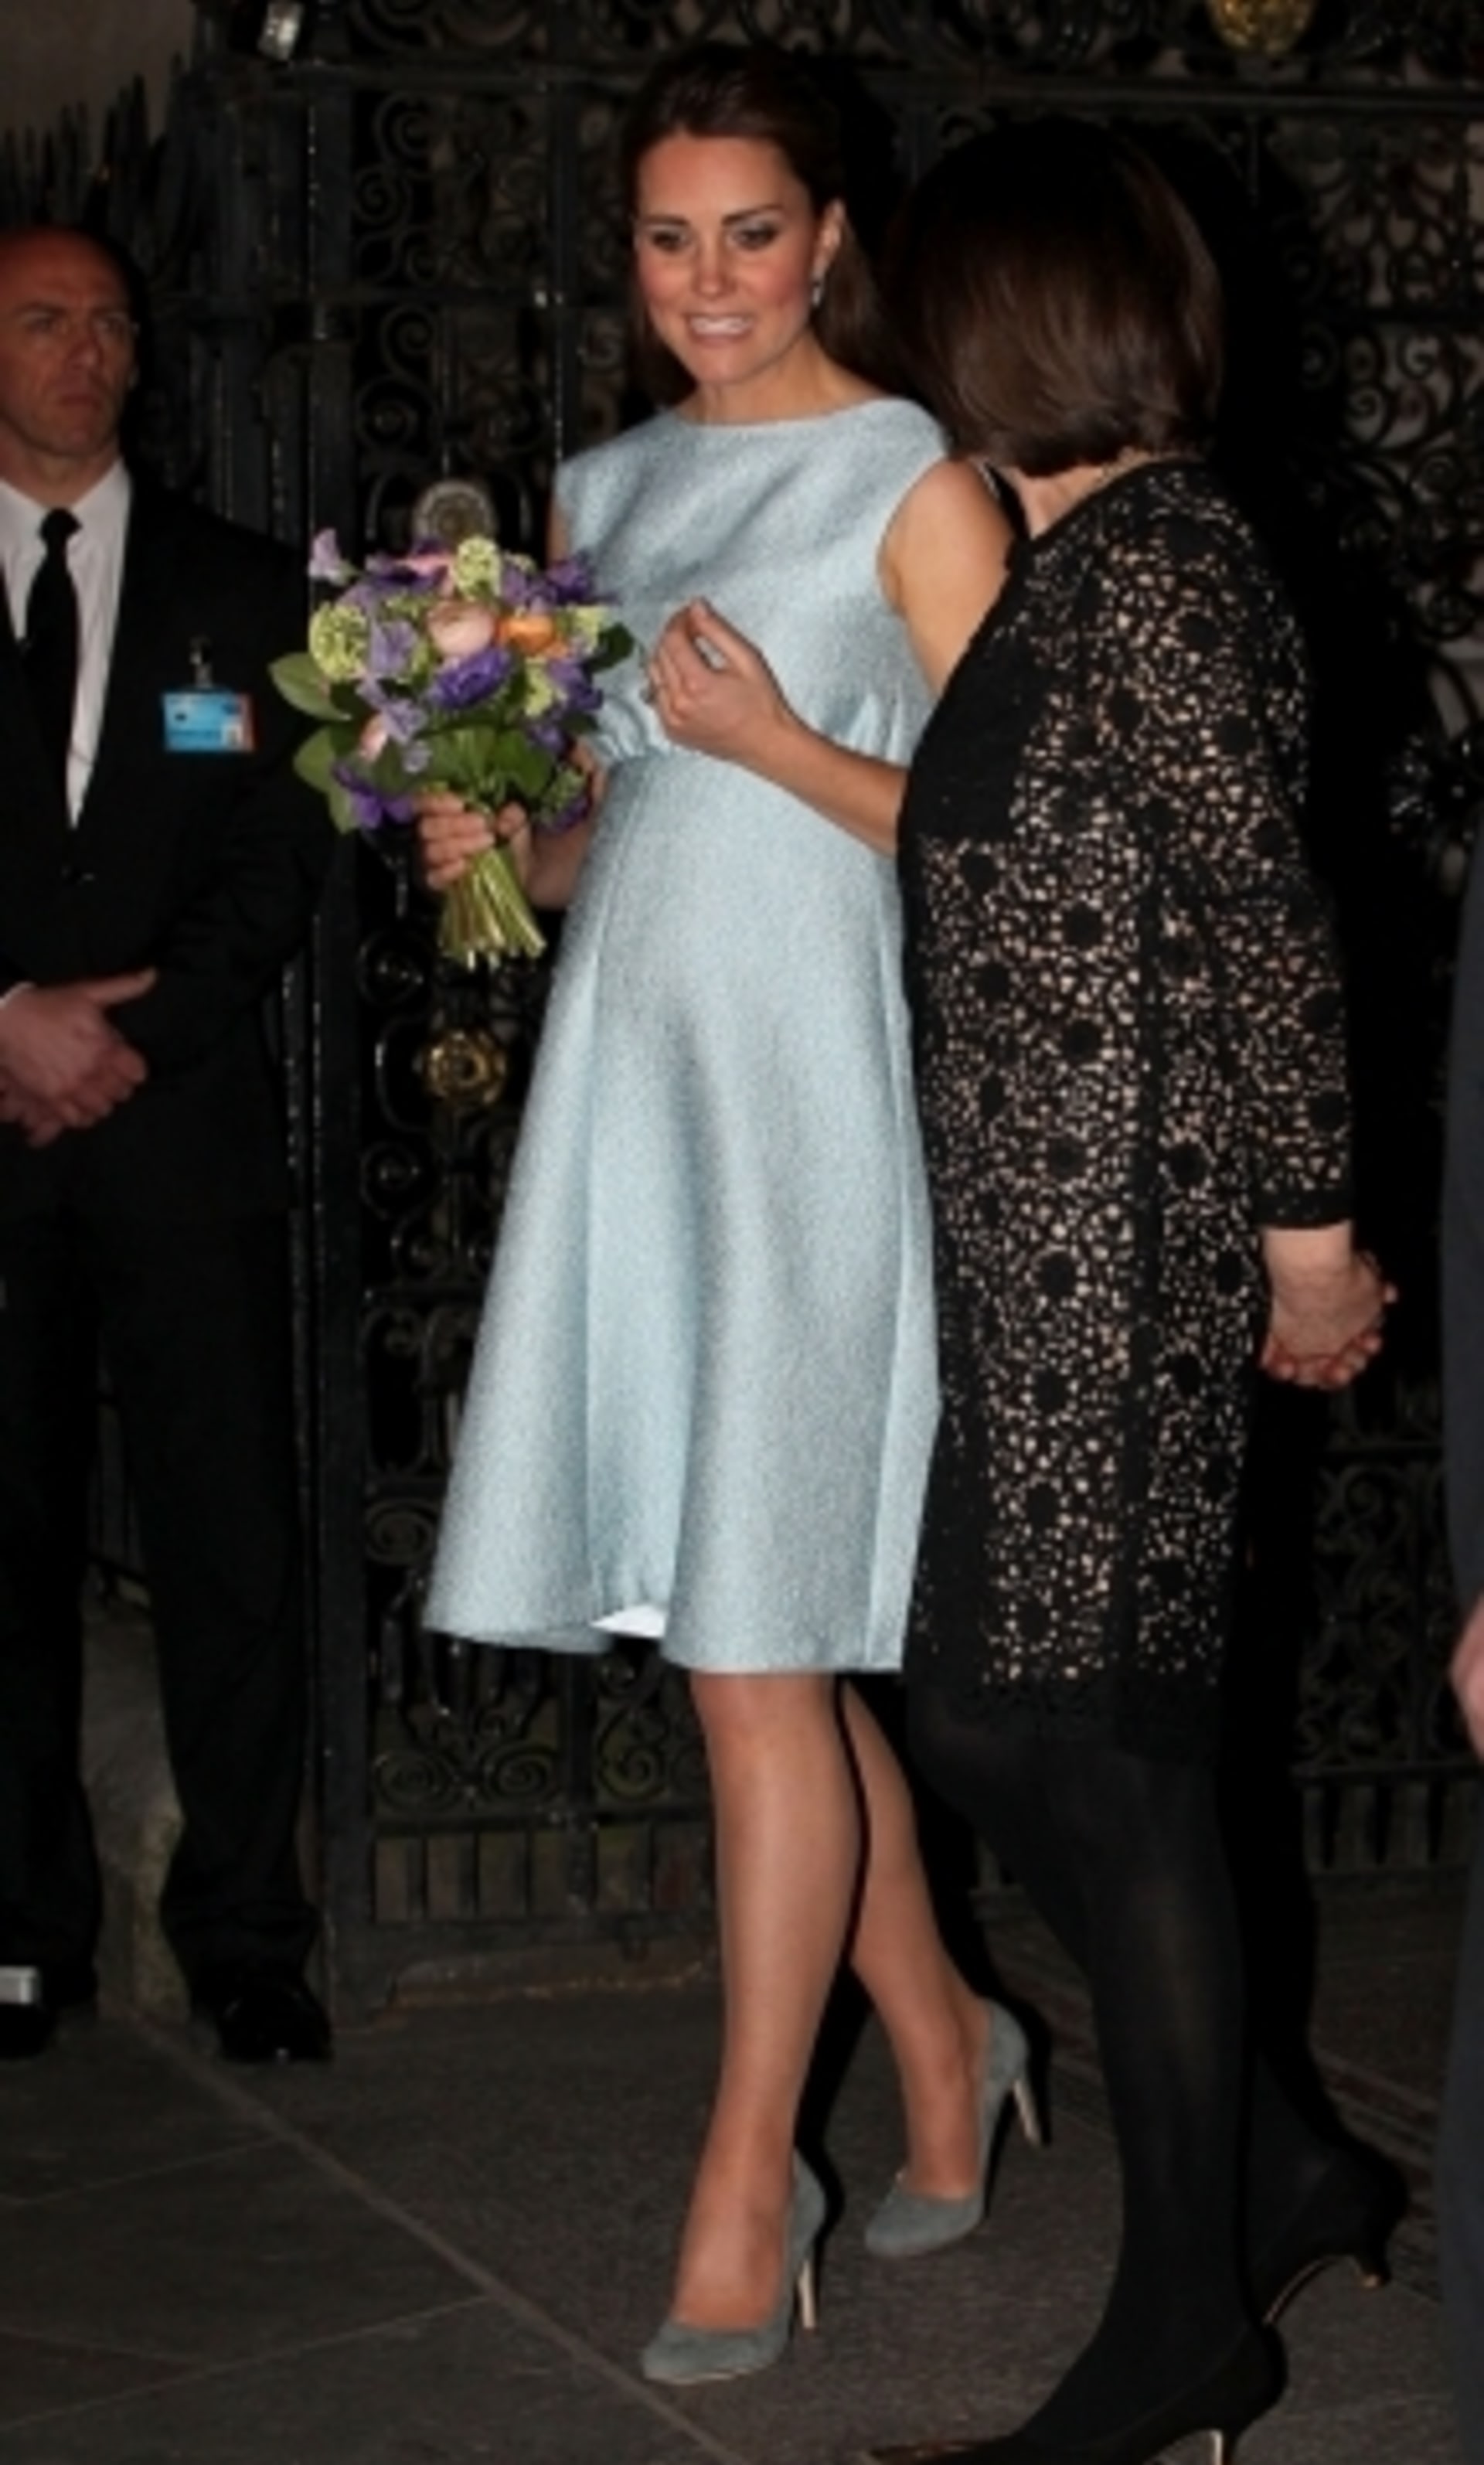 Vévodkyně z Cambridge reprezentuje královskou rodinu stále časteji